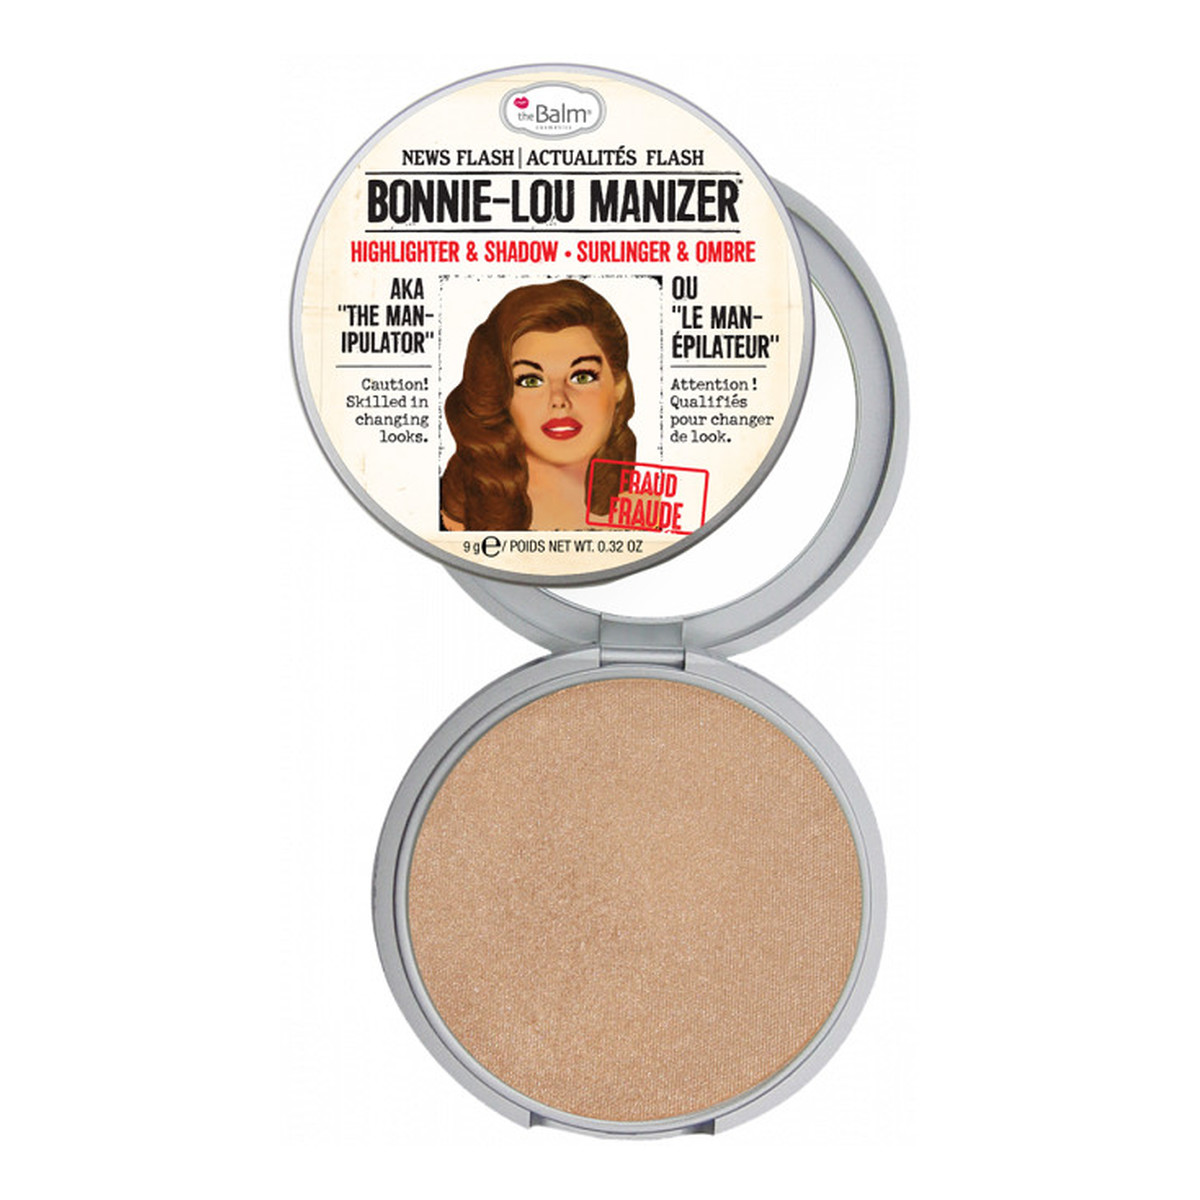 the Balm Bonnie-Lou Manizer Highlighter & Shimmer Wielofunkcyjny Rozświetlacz 9g